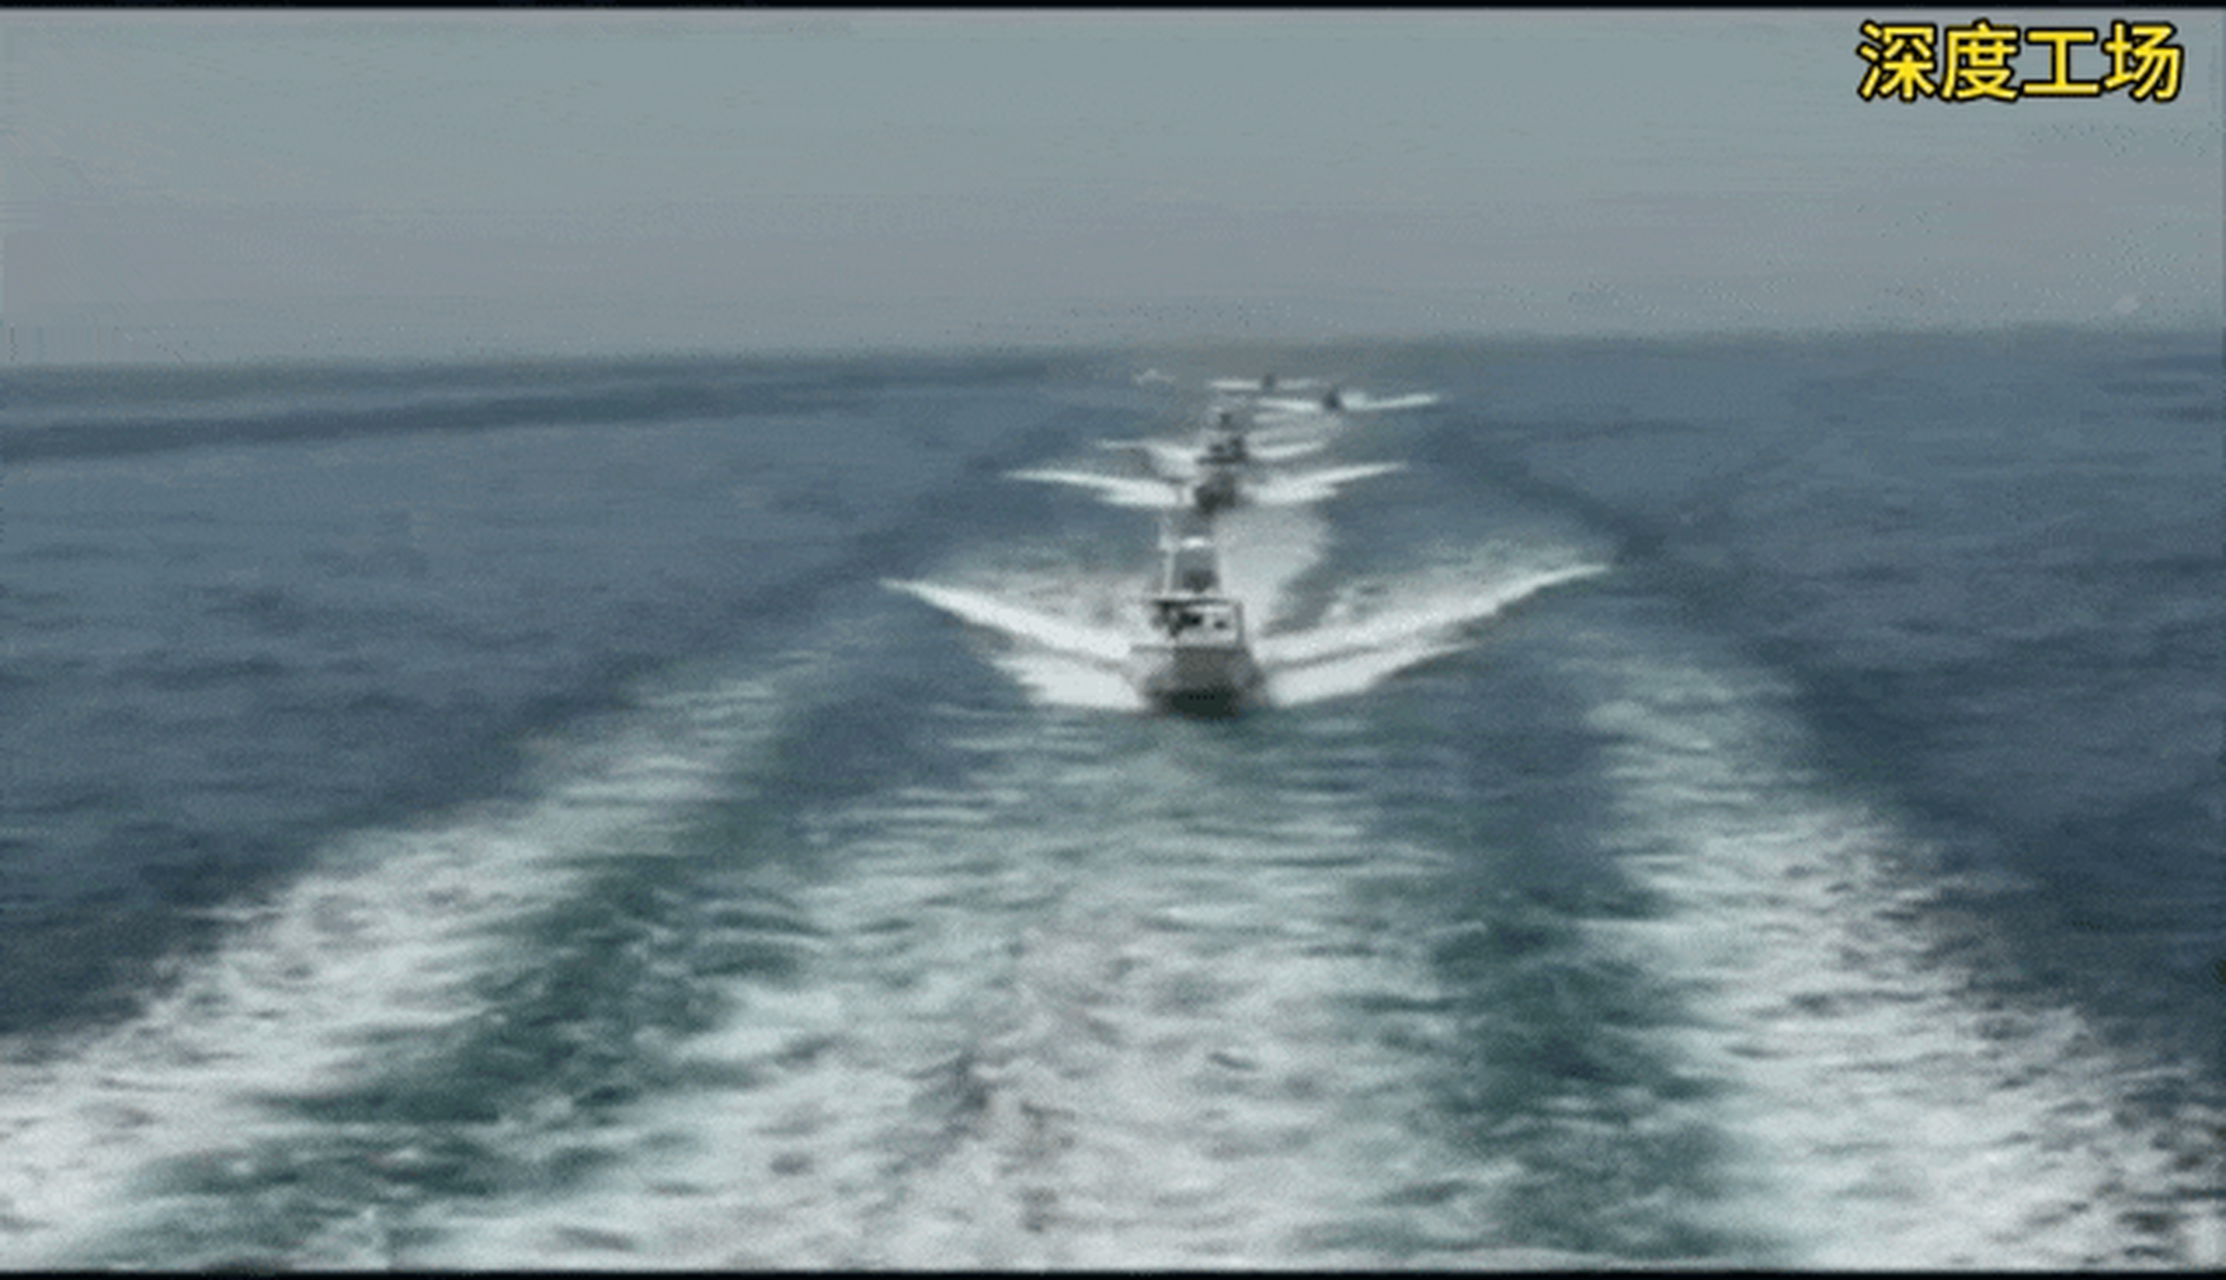 伊朗革命卫队狼群战术,数十艘快艇围堵美军巨型两栖攻击舰